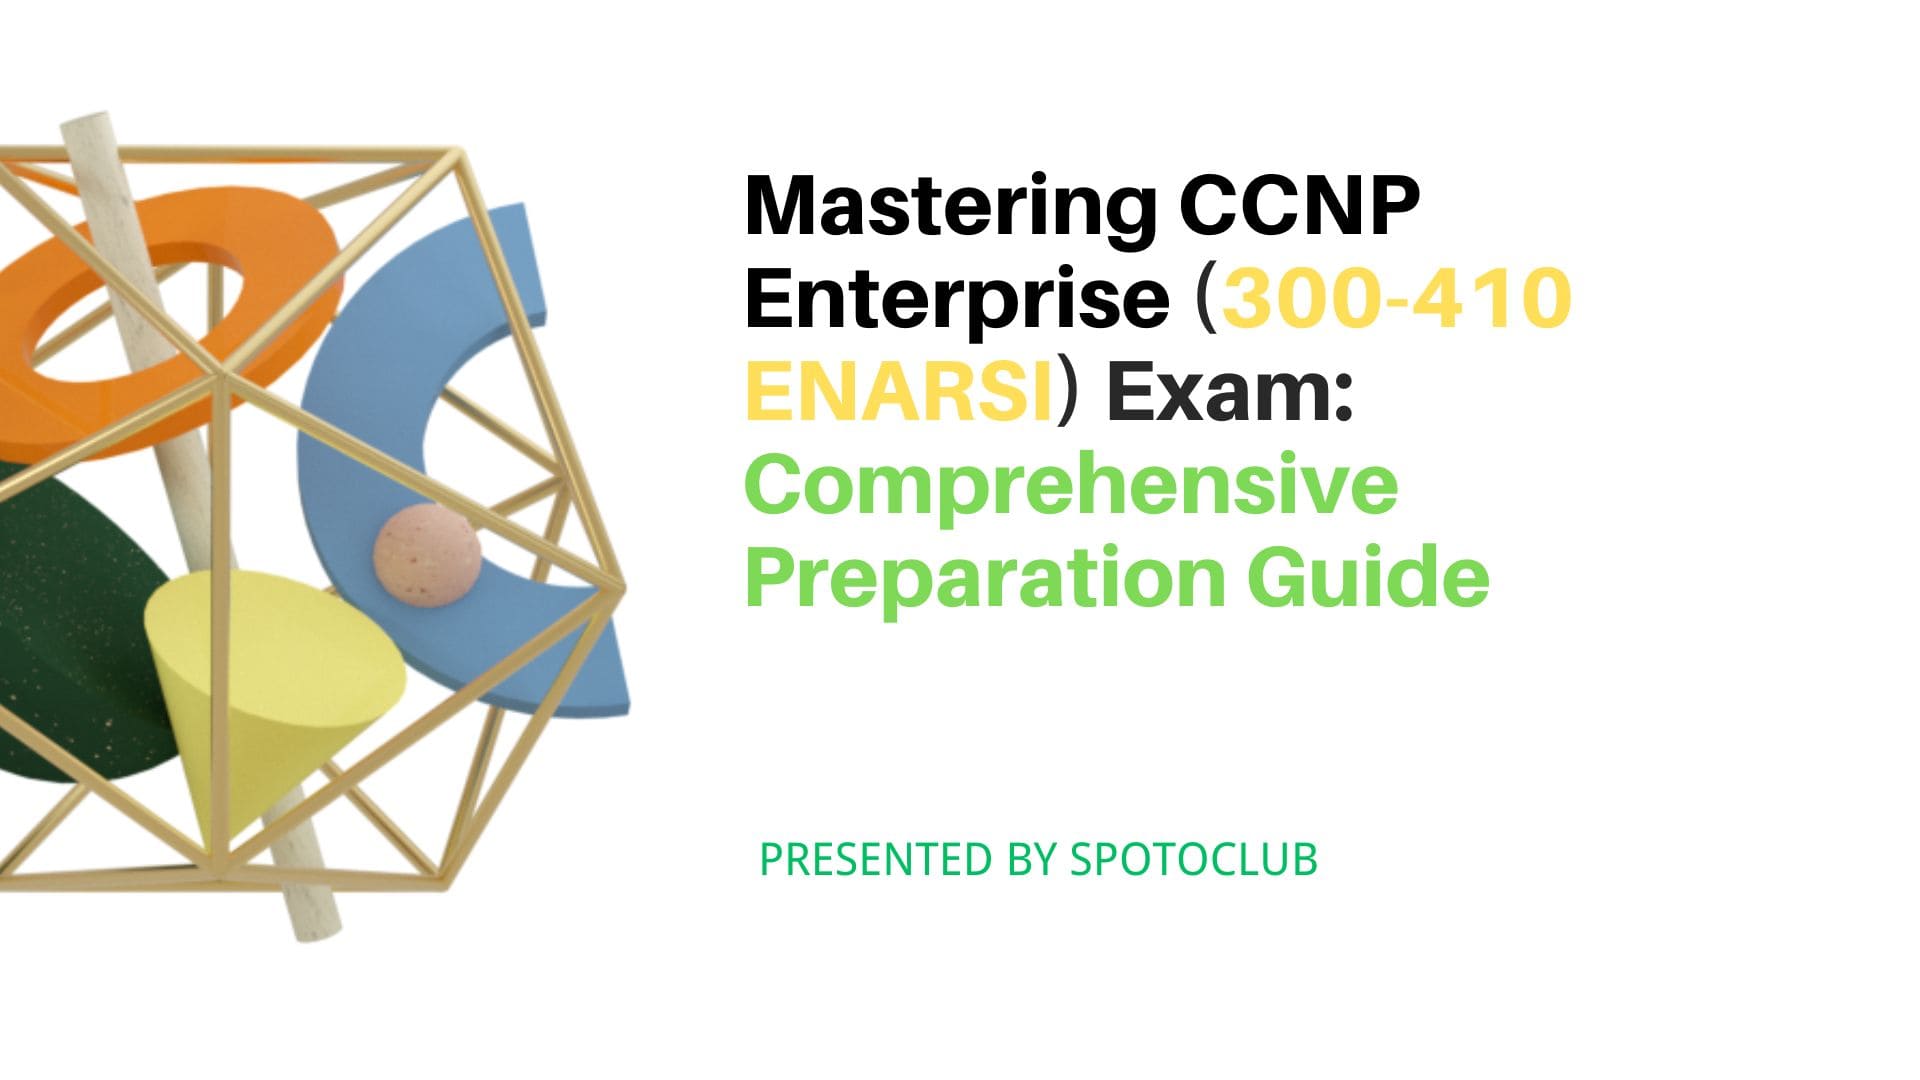 Mastering CCNP Enterprise (300-410 ENARSI) Exam